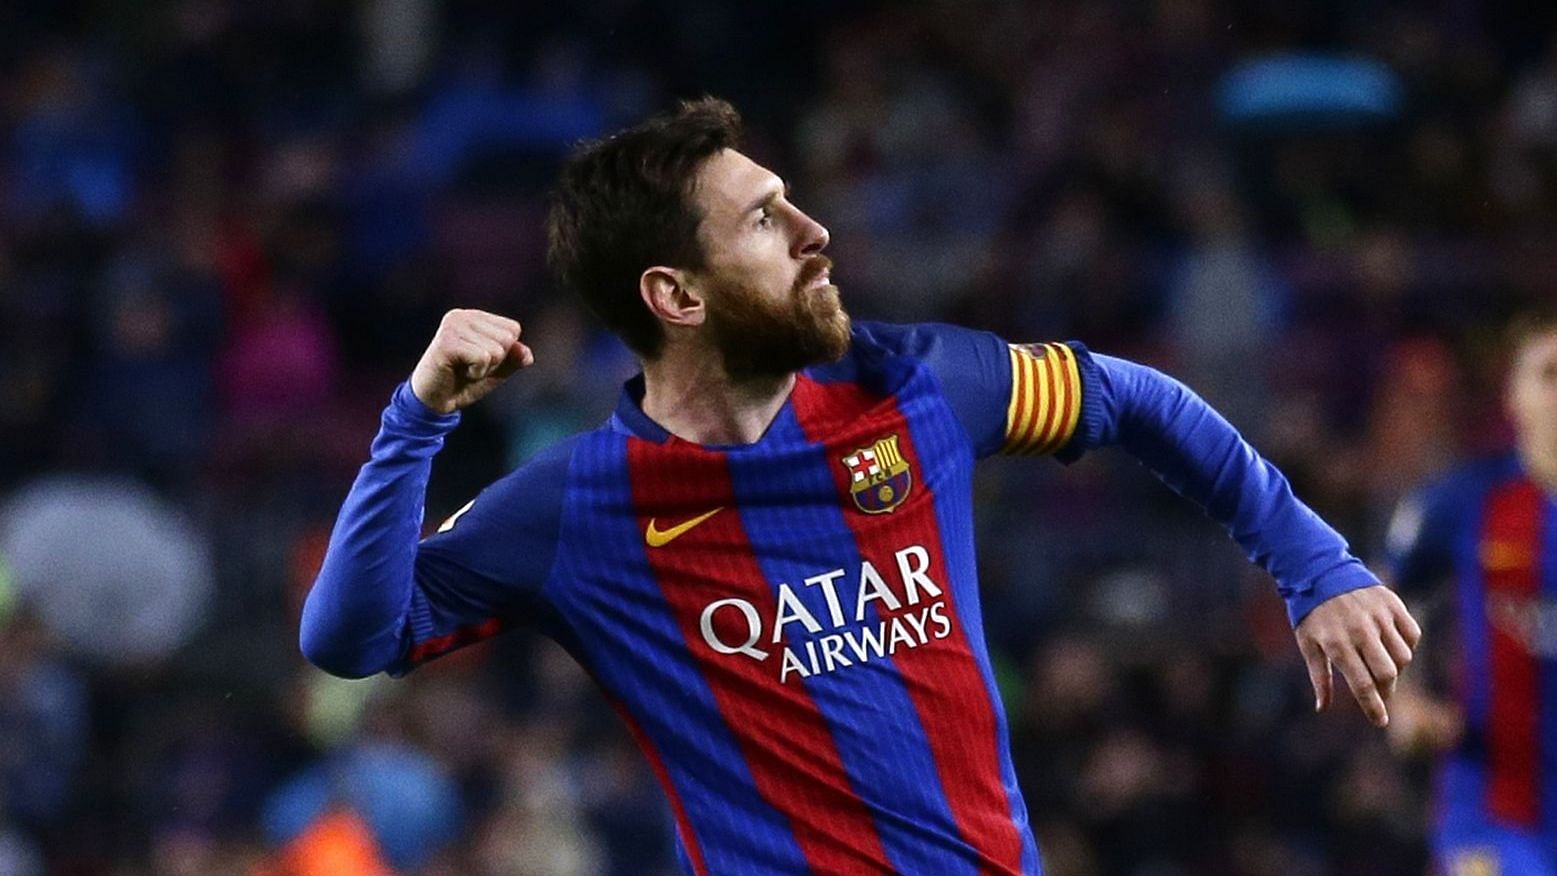 <div class="paragraphs"><p>FC Barcelona’s Lionel Messi celebrates after scoring.</p></div>